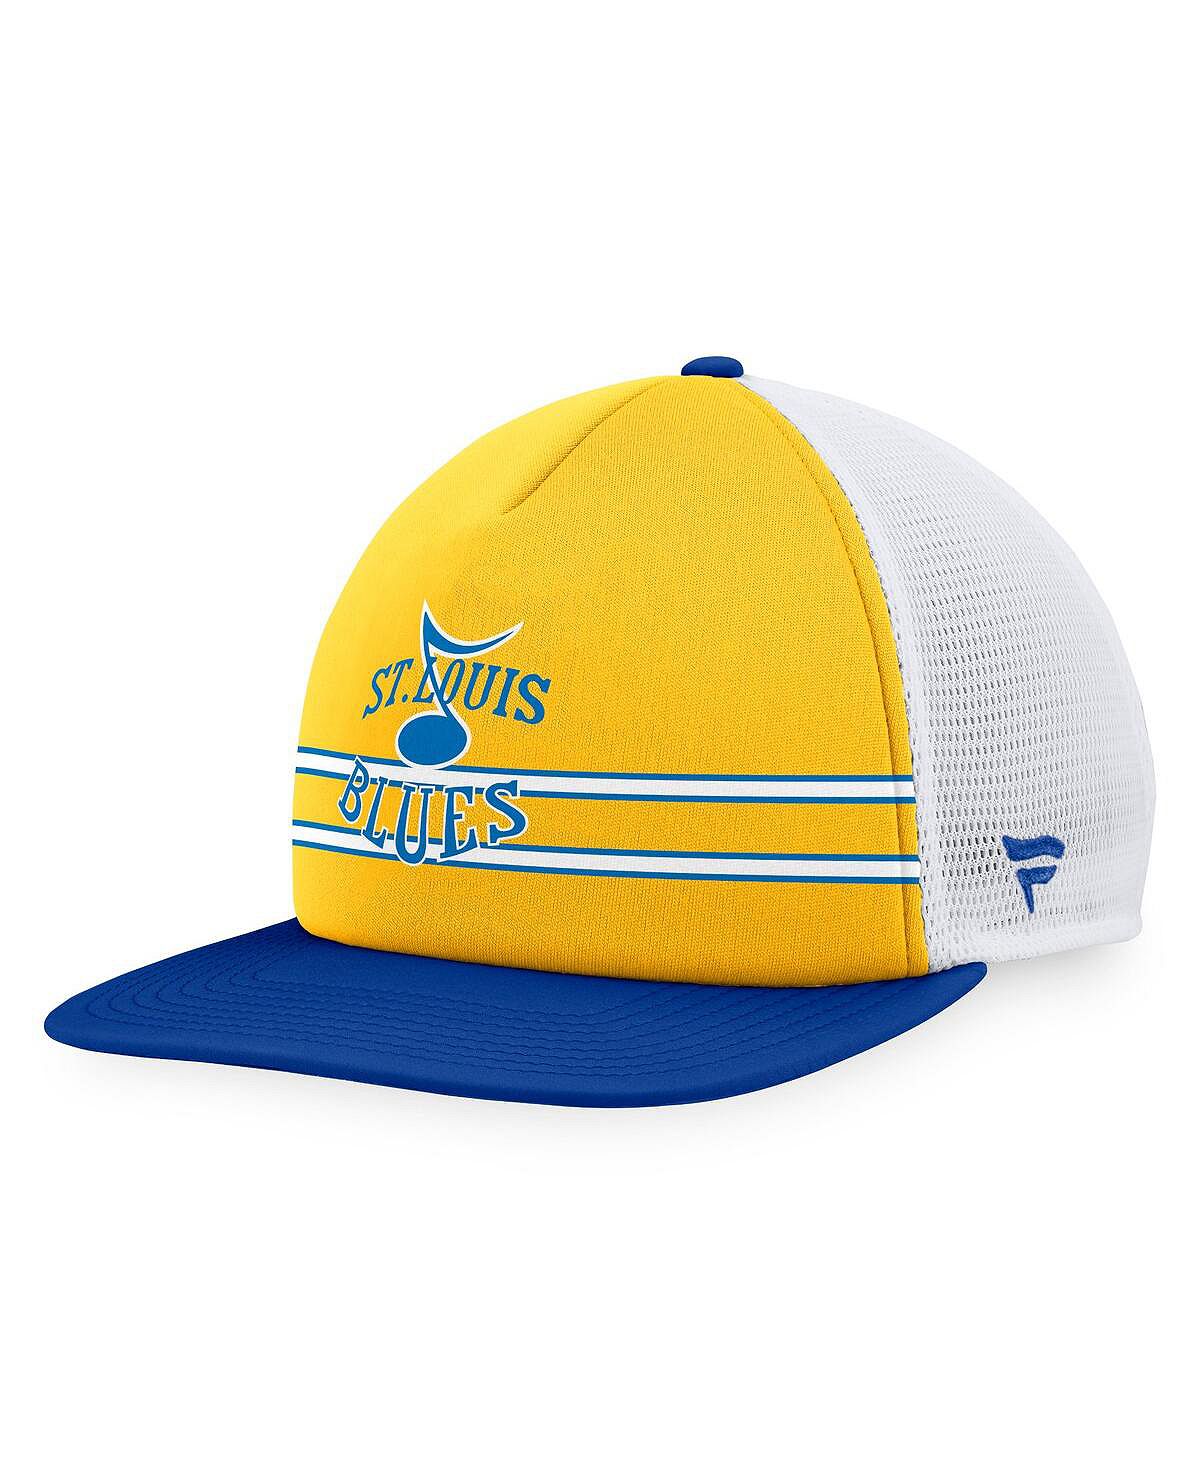 Мужская регулируемая шляпа Trucker Snapback золотистого и синего цвета с фирменным логотипом St. Louis Blues Special Edition 2.0 Fanatics серьги blue gold